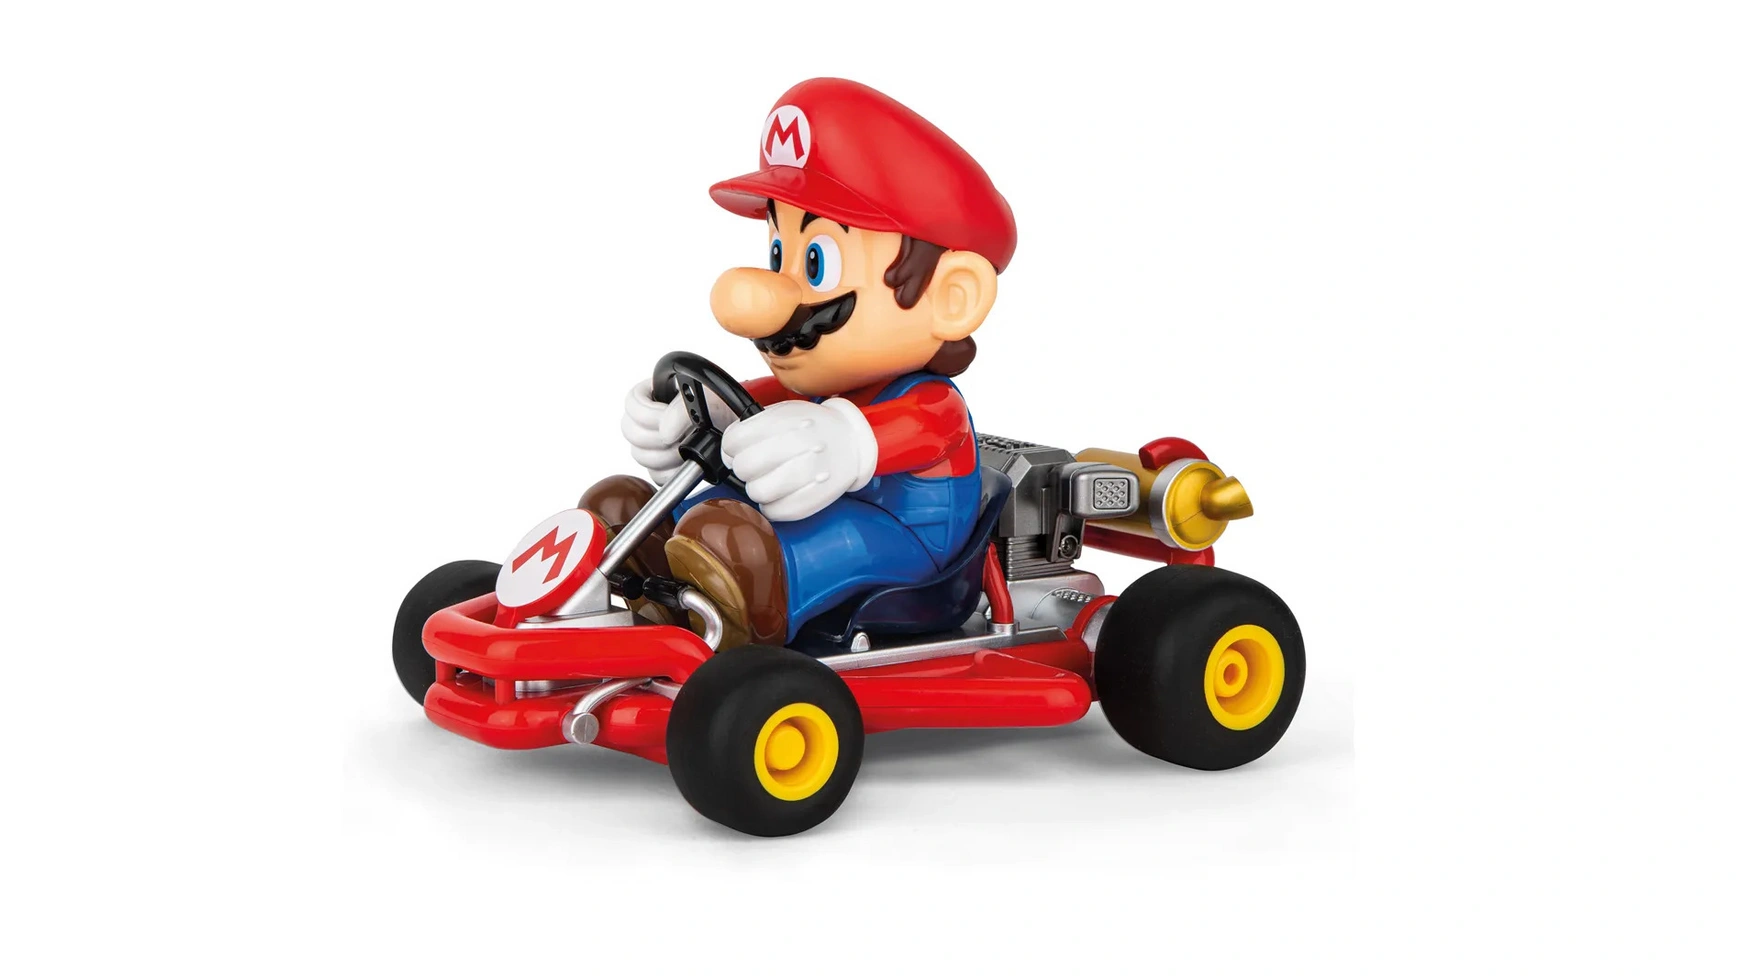 Carrera RC трубчатый карт Mario Kart (TM), 2,4 ГГц, Mario carrera rc toy car mario with remote control